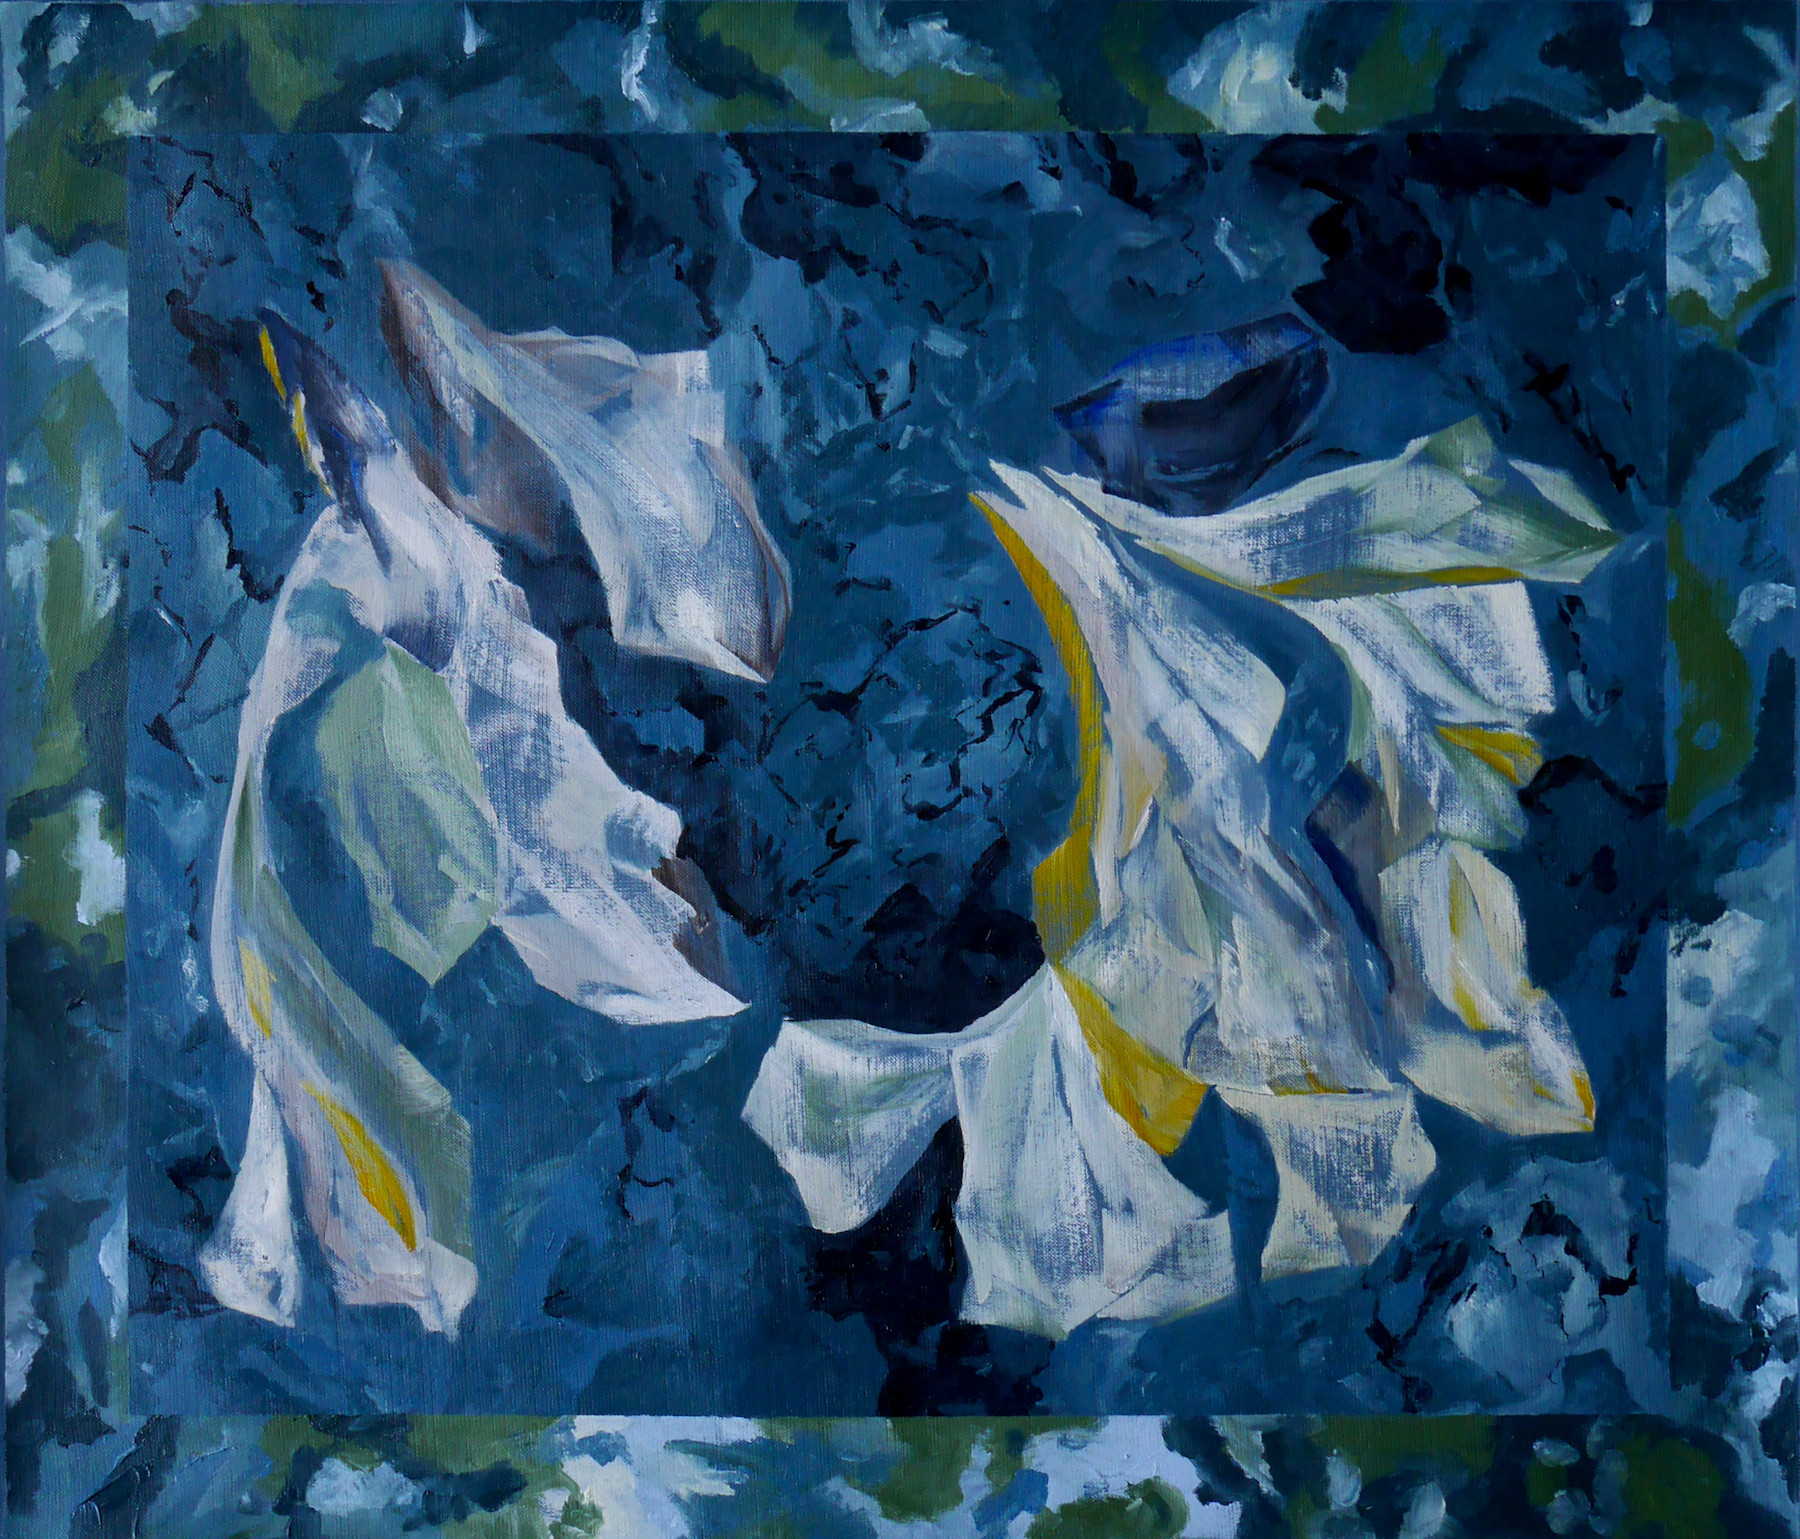 Melissa Sinapan, *La fissure de timidité*, 2020, huile sur toile libre, 73 x 87 cm. © Melissa Sinapan.